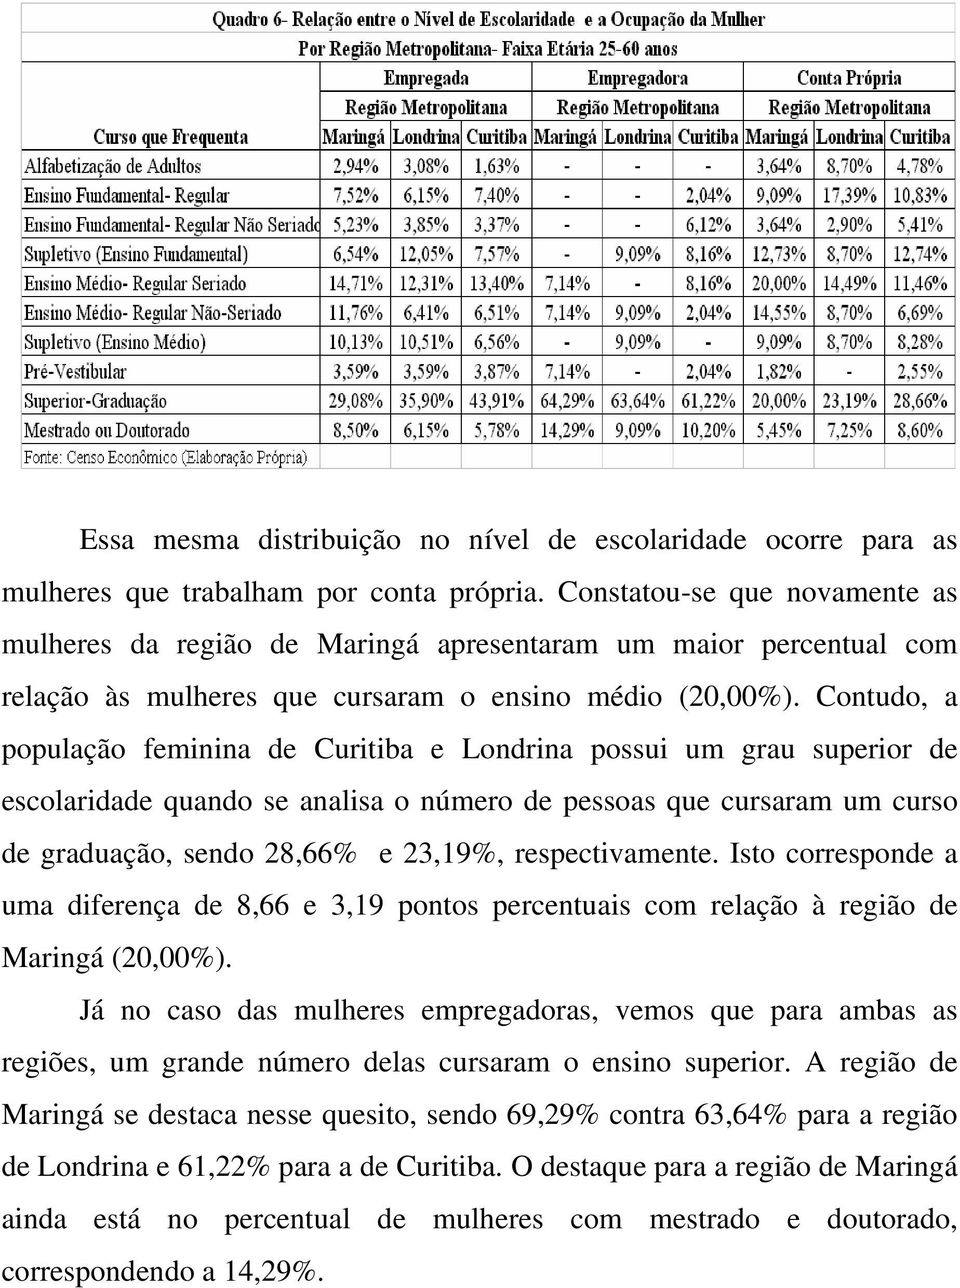 Contudo, a população feminina de Curitiba e Londrina possui um grau superior de escolaridade quando se analisa o número de pessoas que cursaram um curso de graduação, sendo 28,66% e 23,19%,